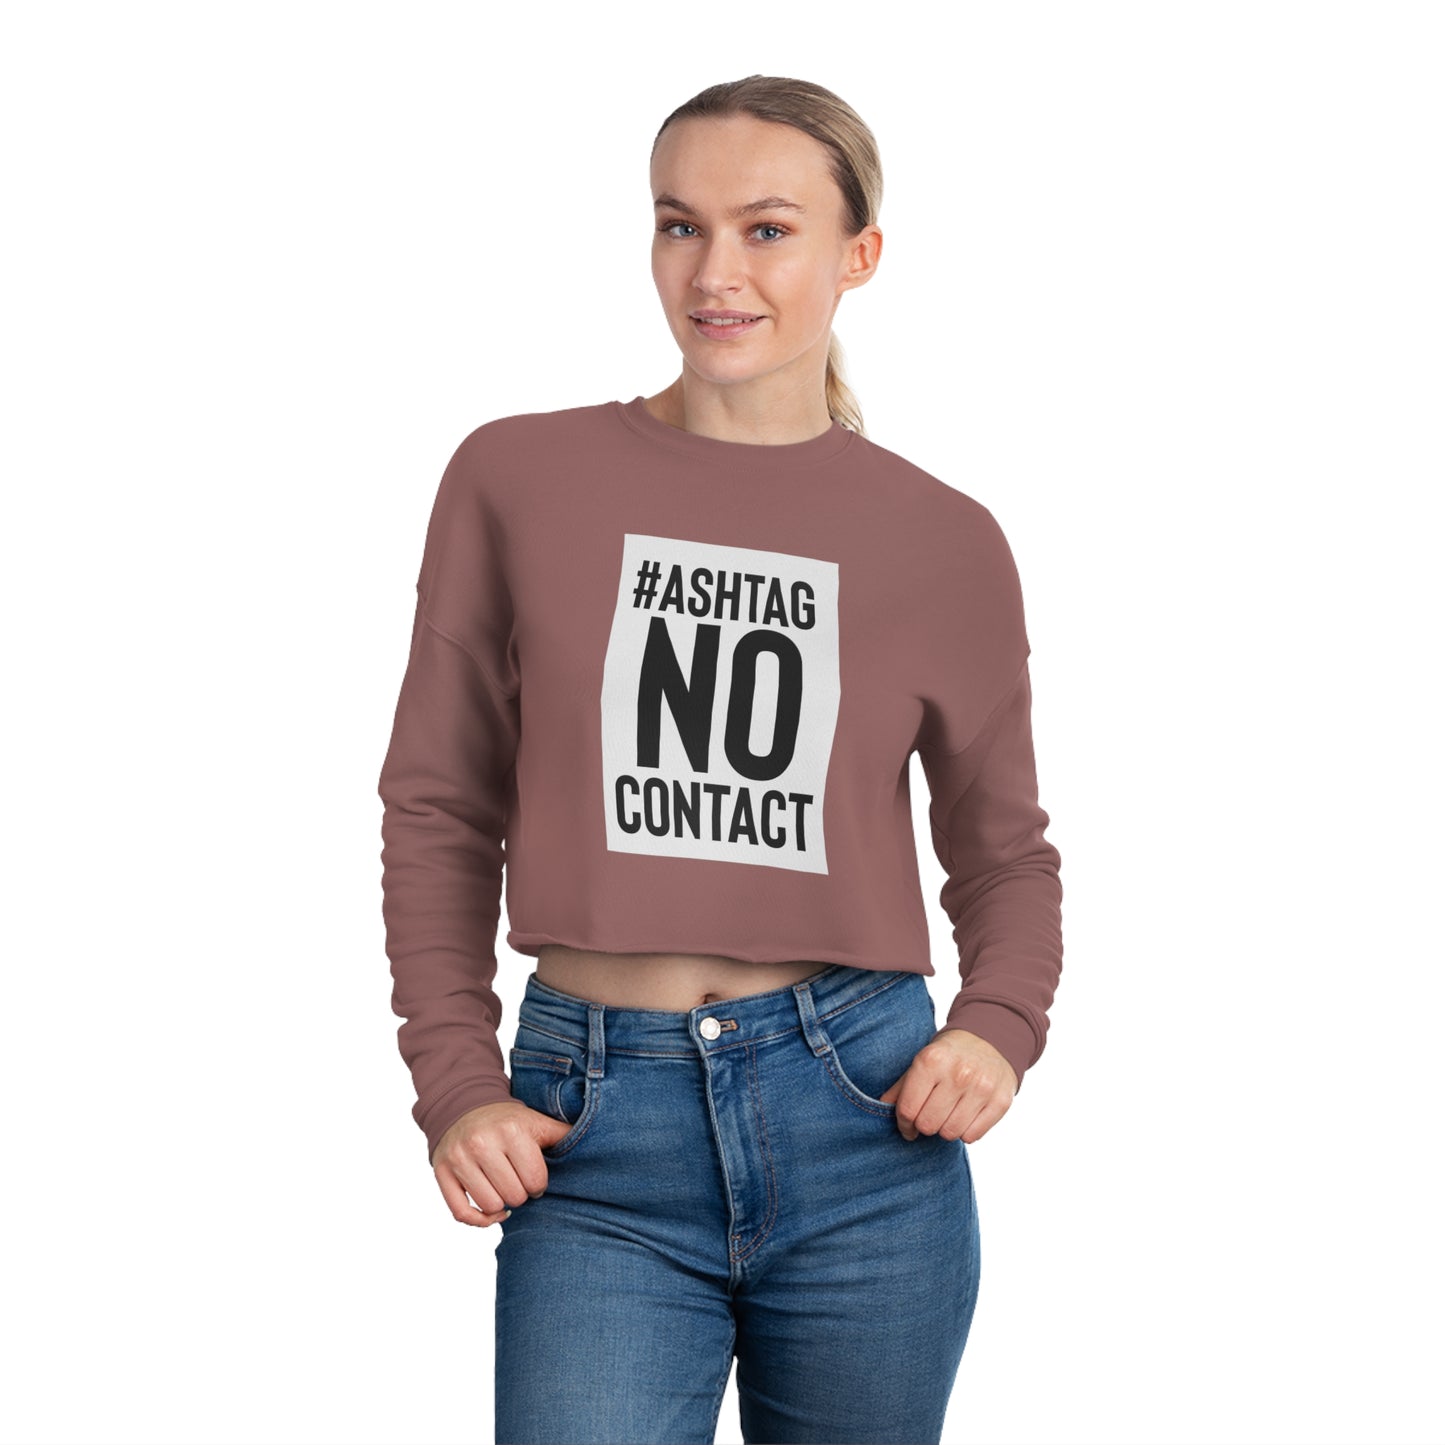 Hashtag No Contact Women's Cropped Sweatshirt